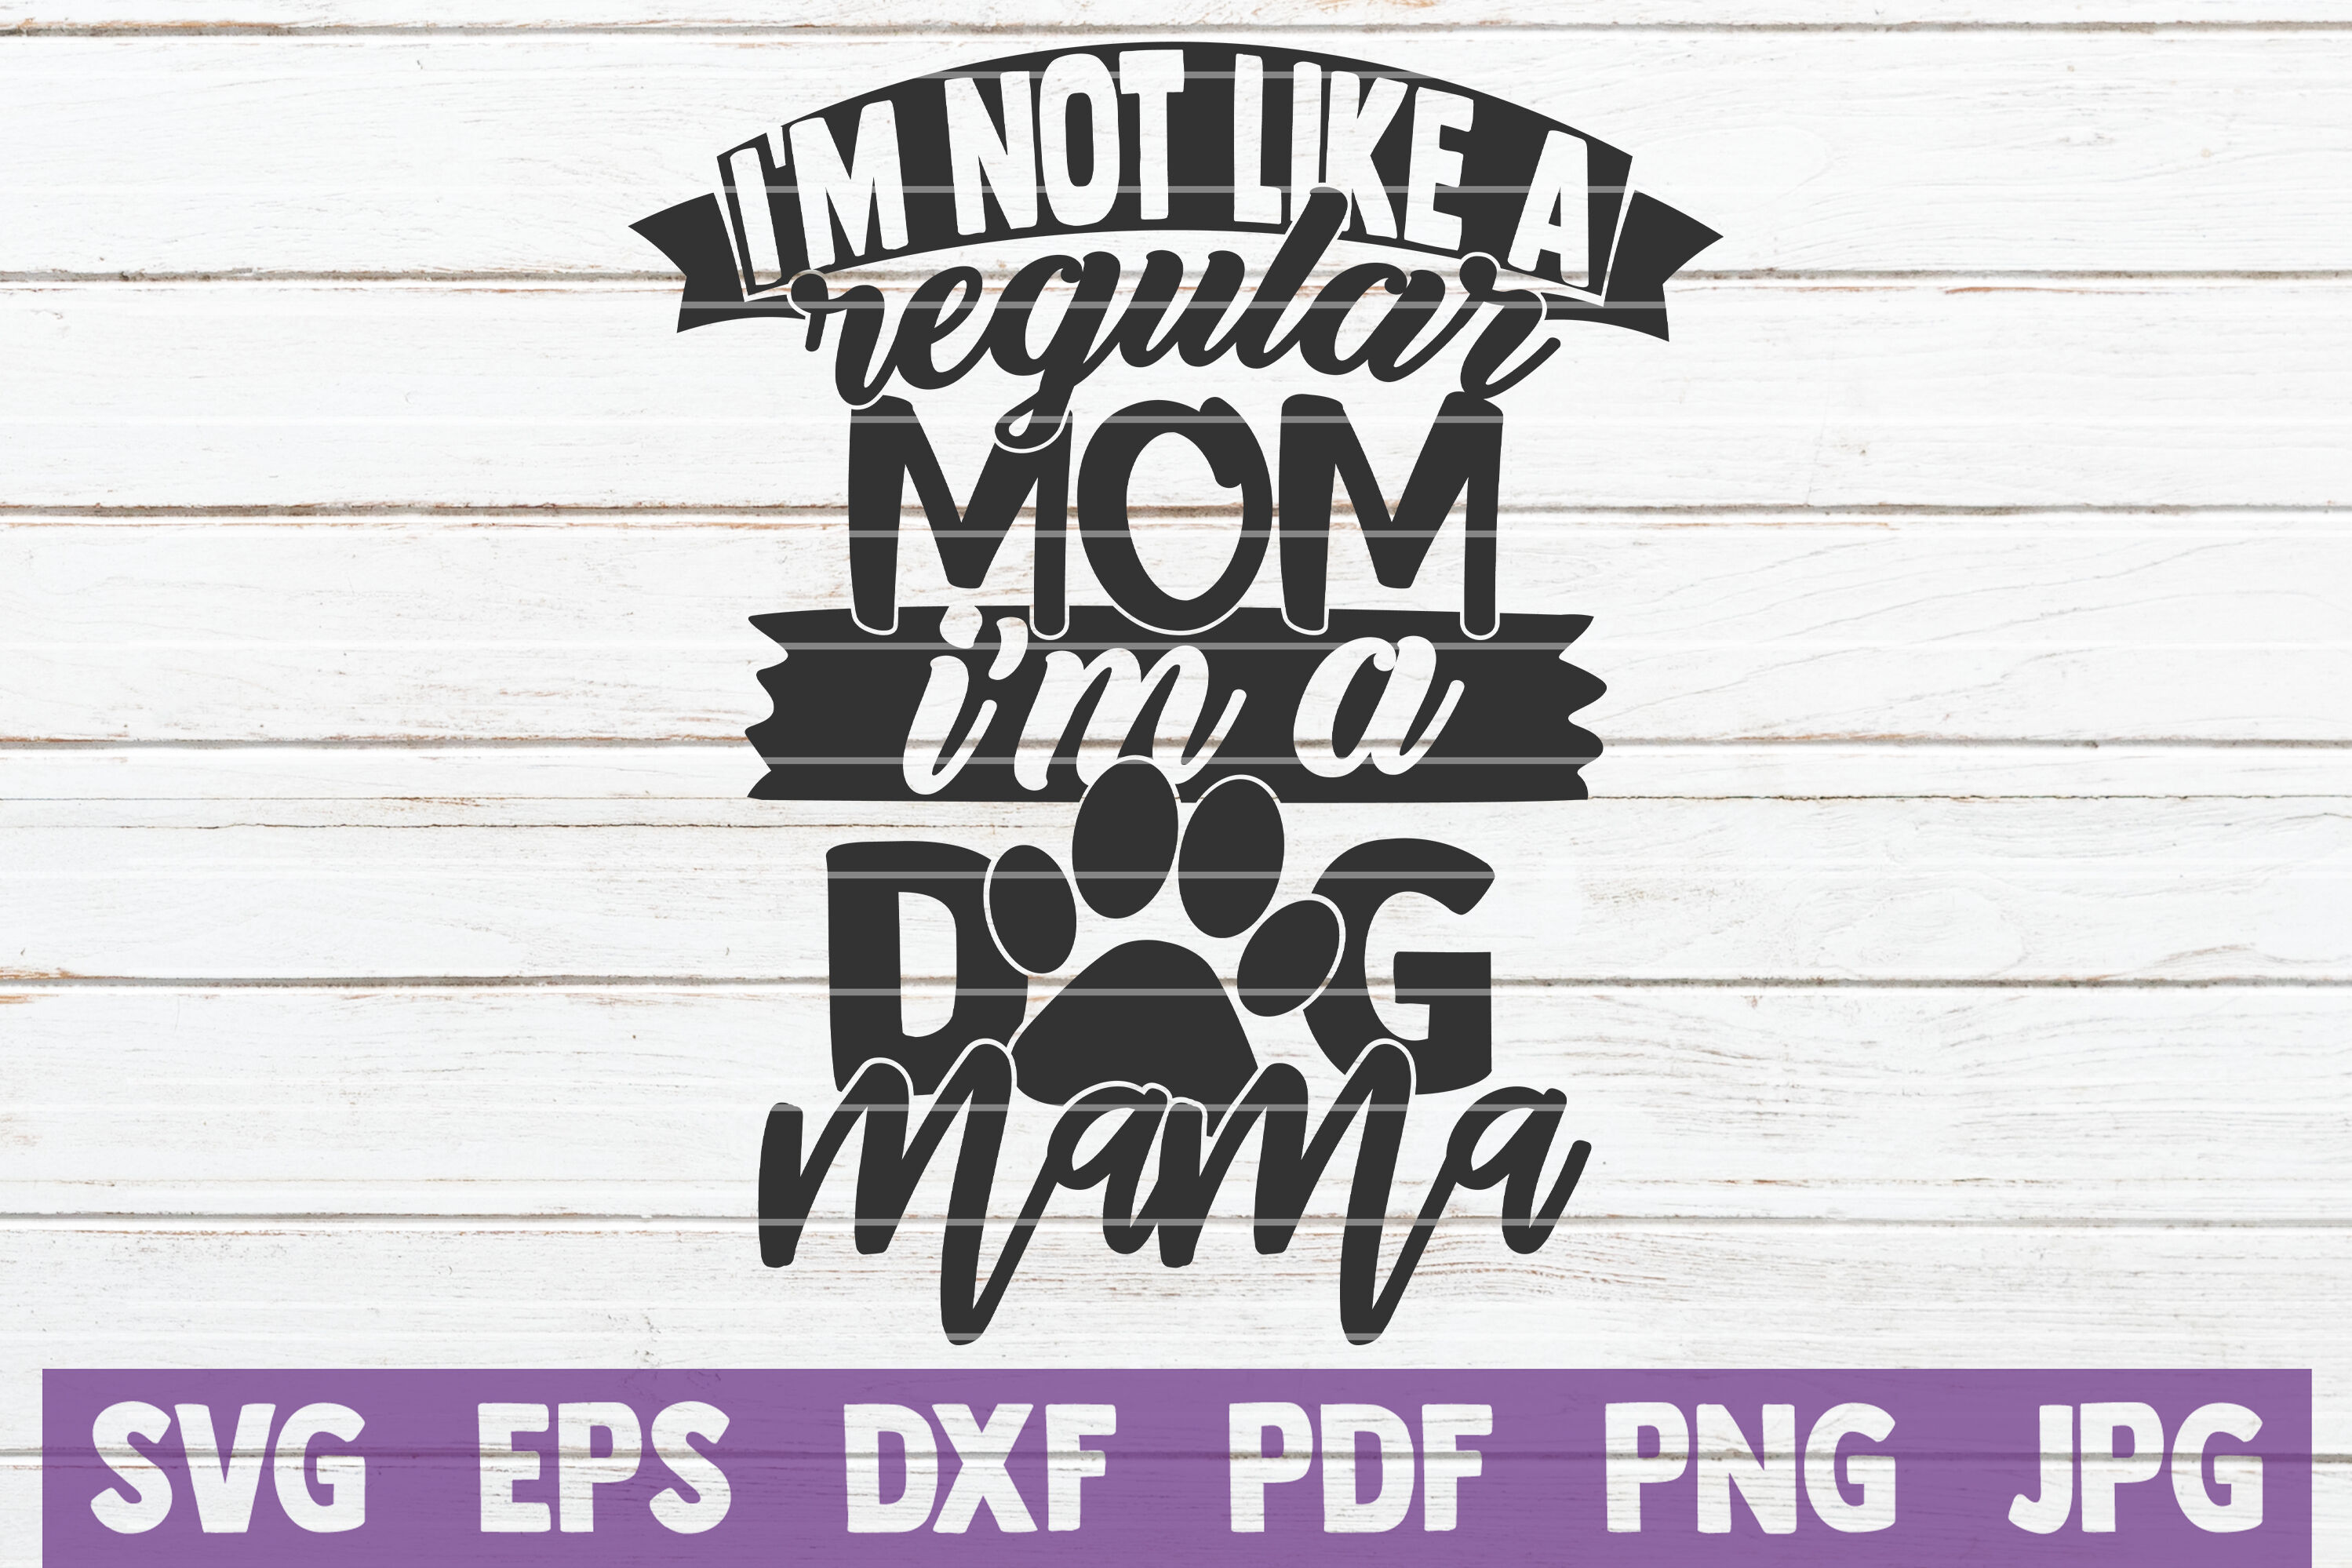 I/'m Not A Regular Mom I/'m A Dog Mom Instant Download SVG EPS dxf PNG jpg digital download